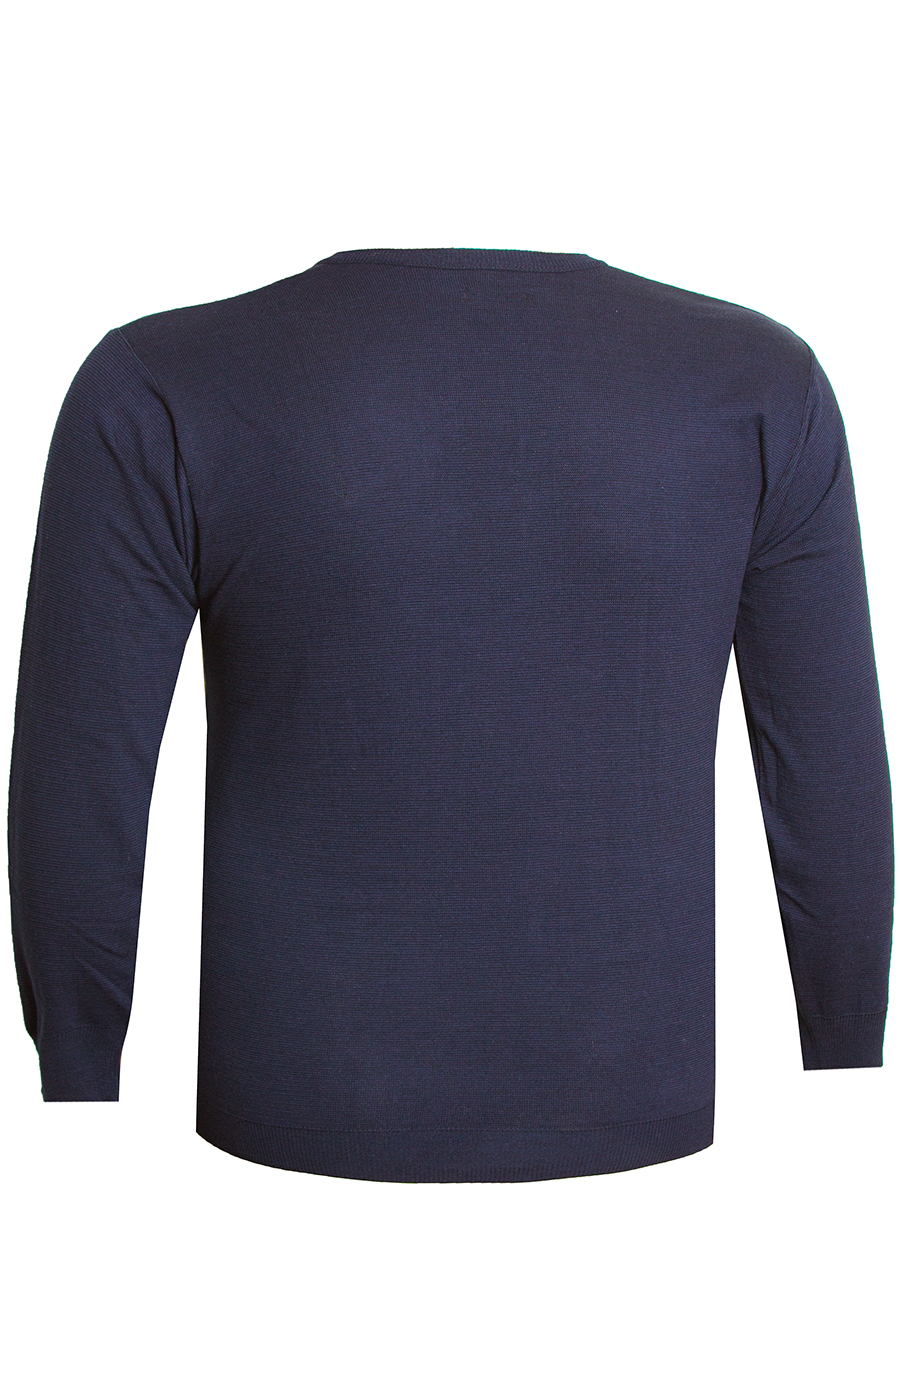 Темно-синий свитер большого размера